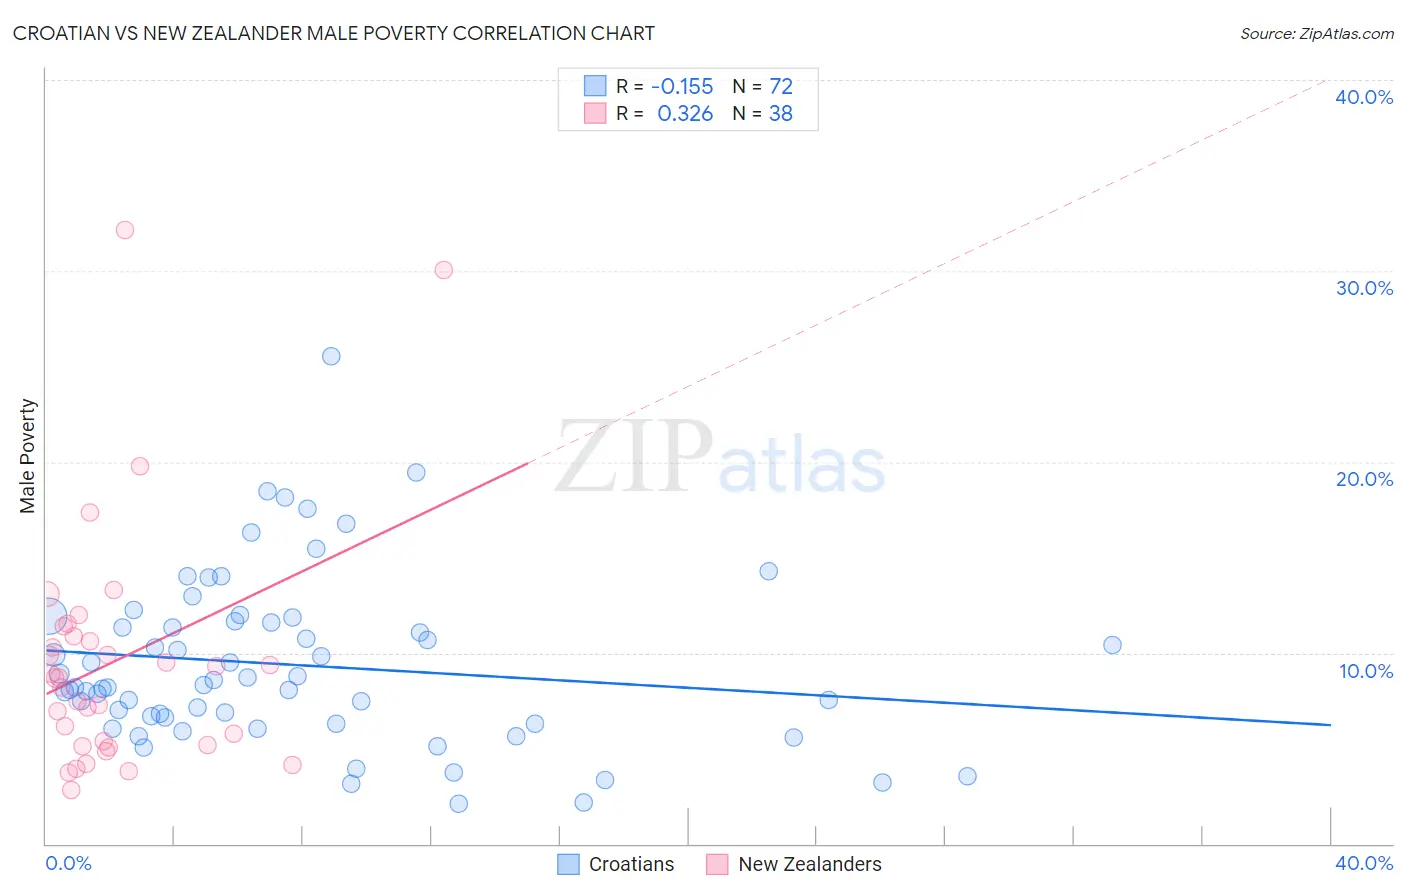 Croatian vs New Zealander Male Poverty